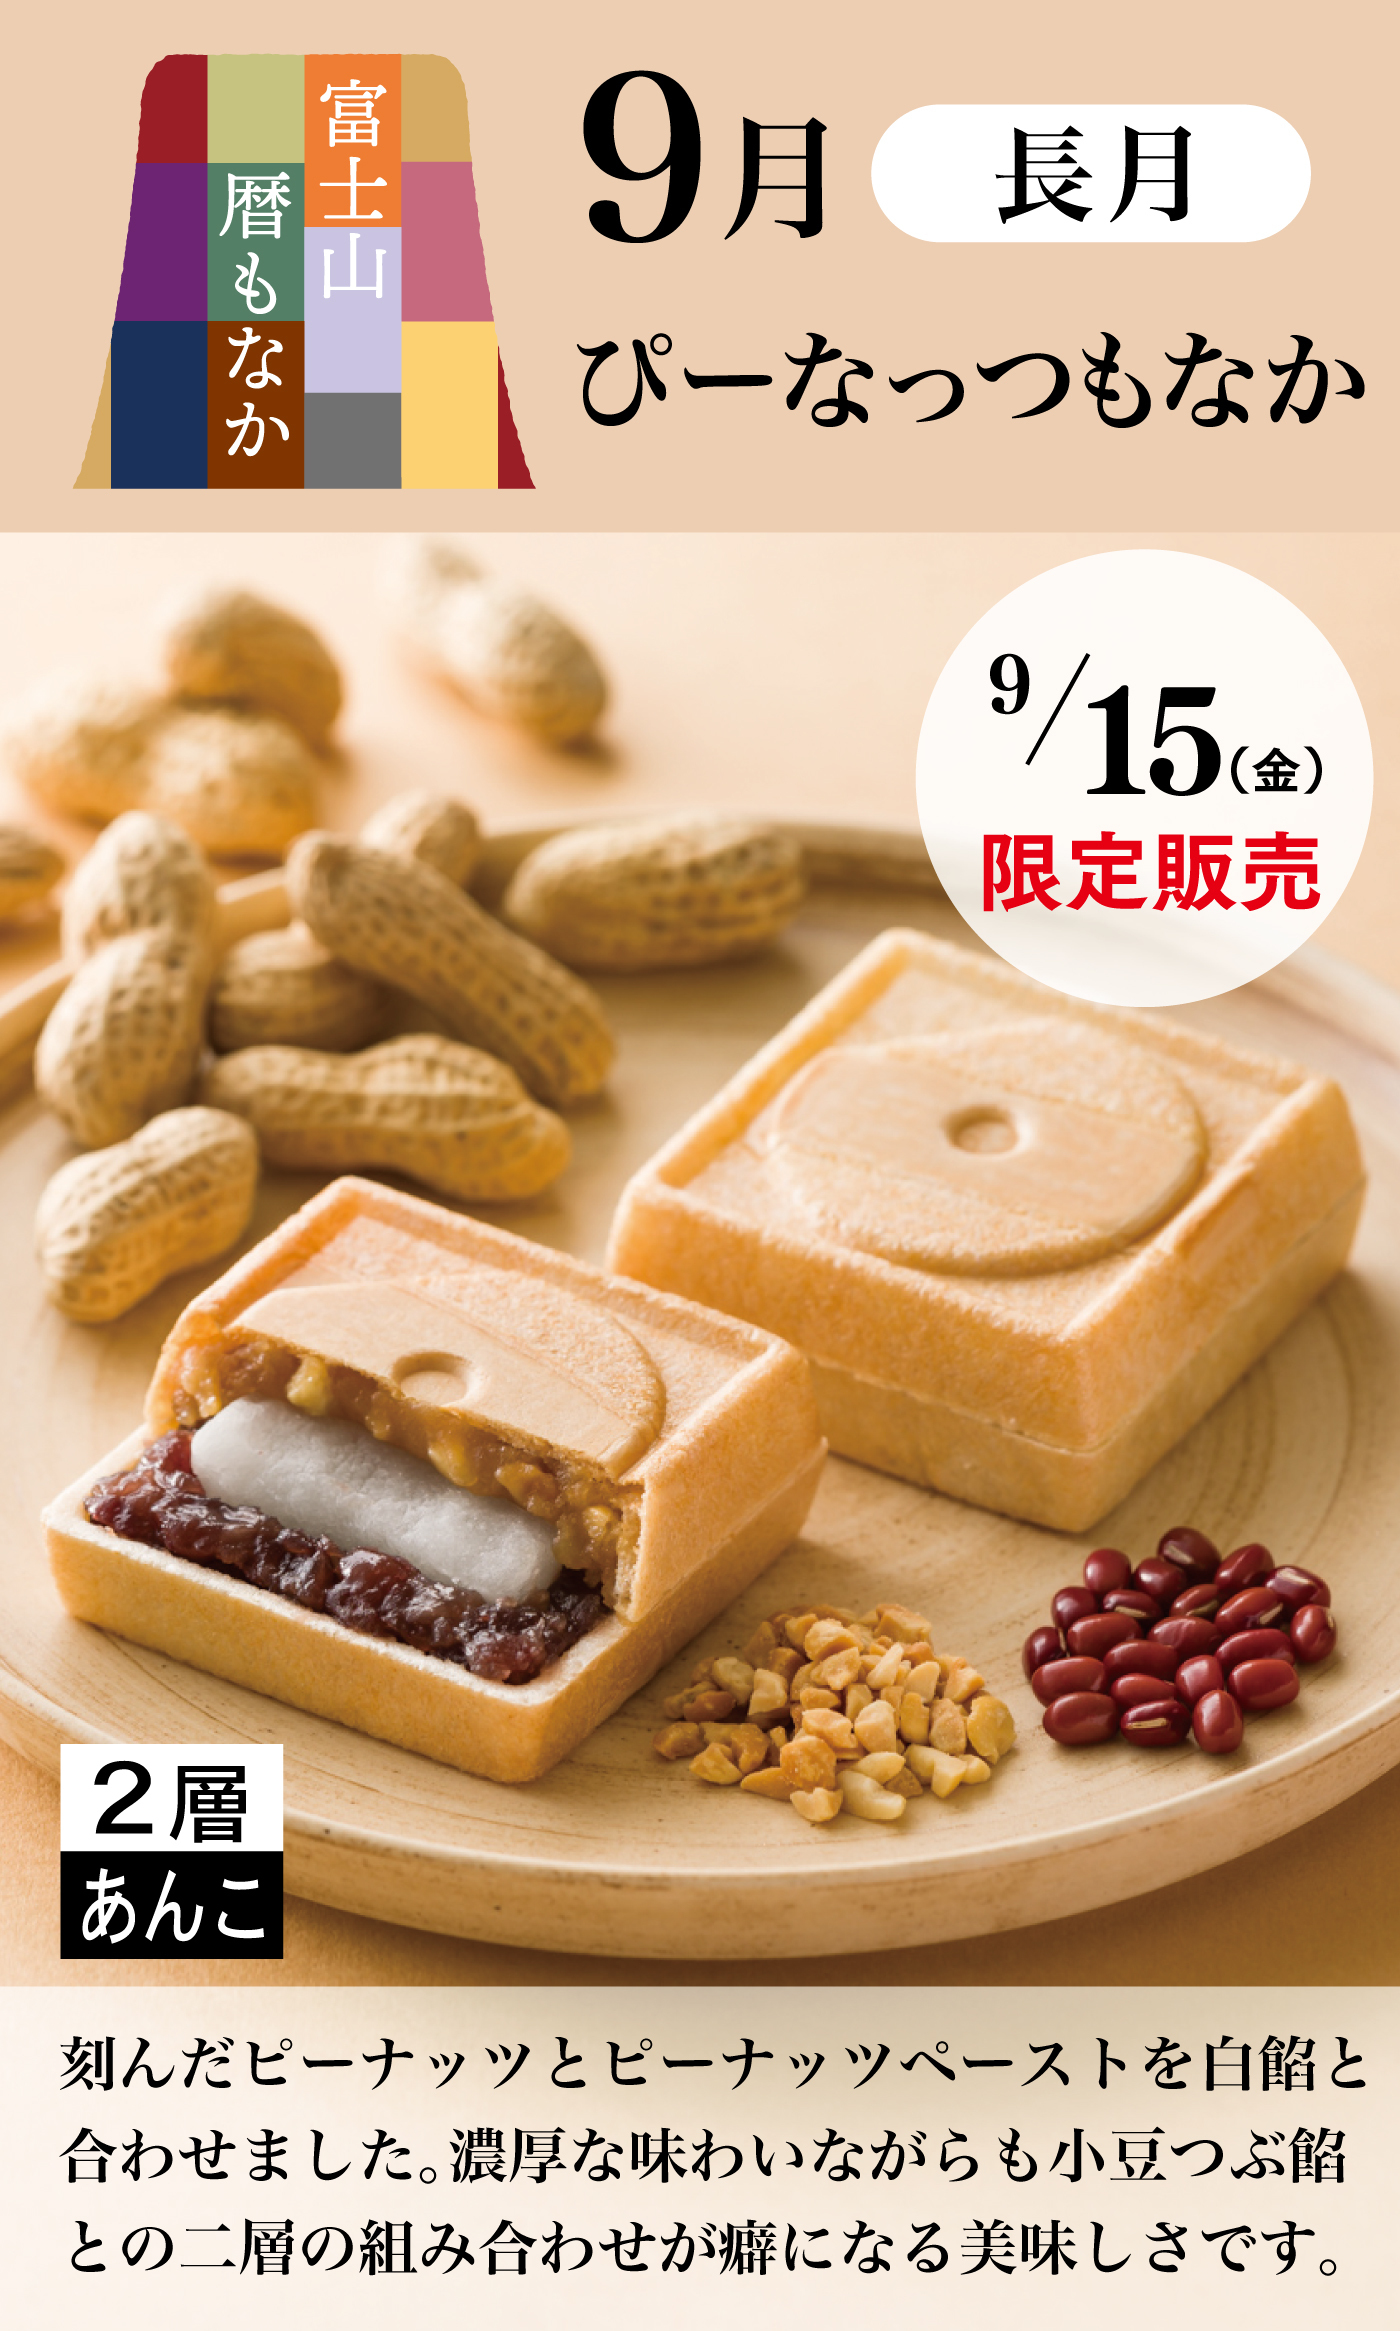 富士山暦もなか9月長月ぴーなっつもなか9/15(金)限定販売2層あんこ刻んだピーナッツとピーナッツペーストを白餡と合わせました。濃厚な味わいながらも小豆つぶ餡との二層の組み合わせが癖になる美味しさです。